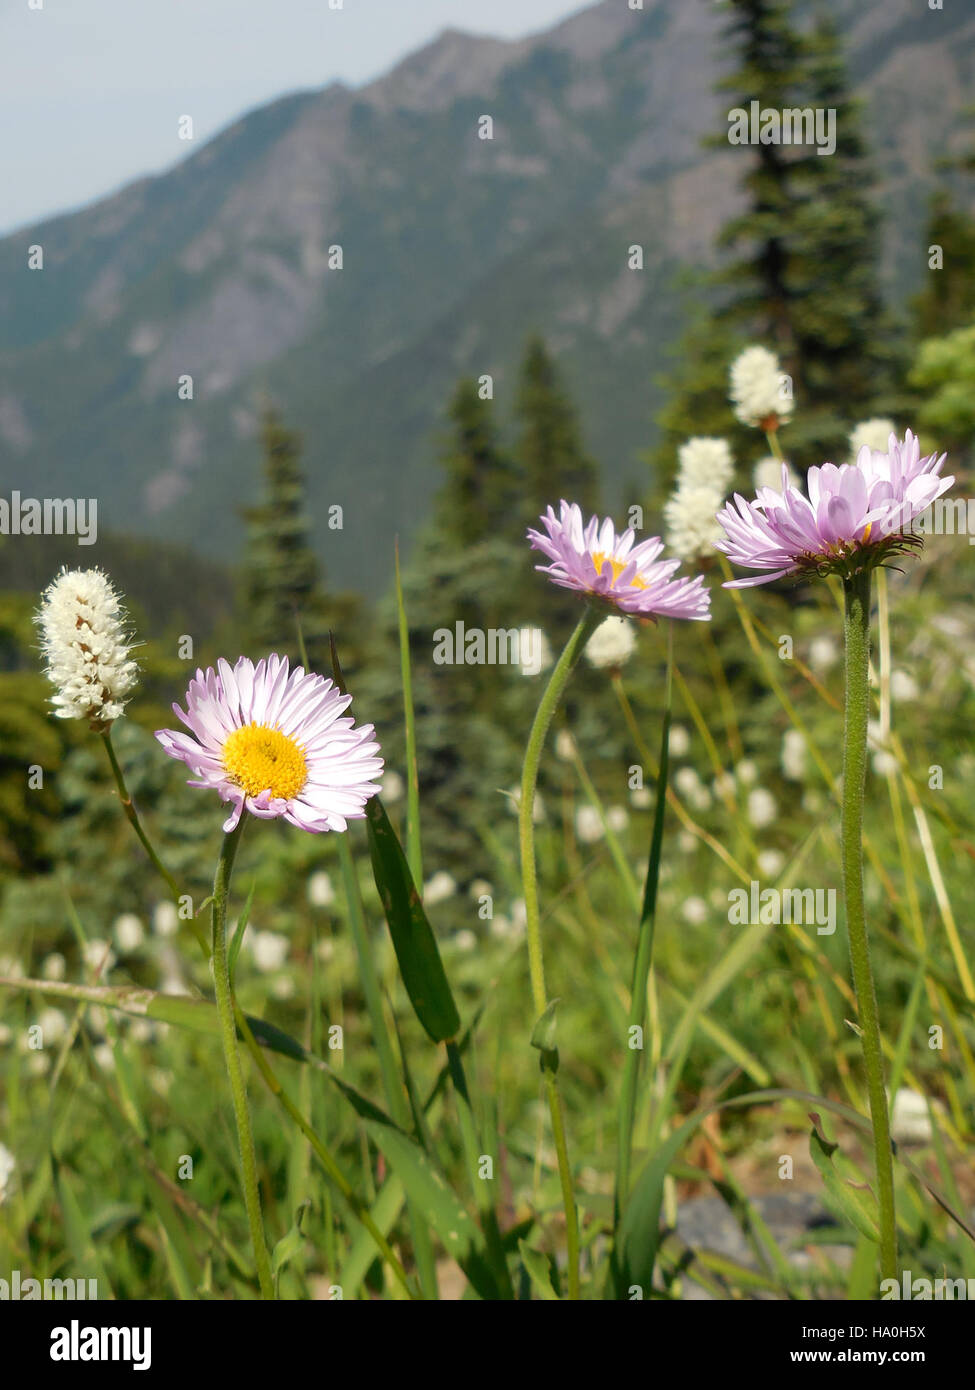 olympicnps 22554401027 three purple pink fleabane flower alpine wildflowers hurricane ridge c bubar june 27 2014 Stock Photo